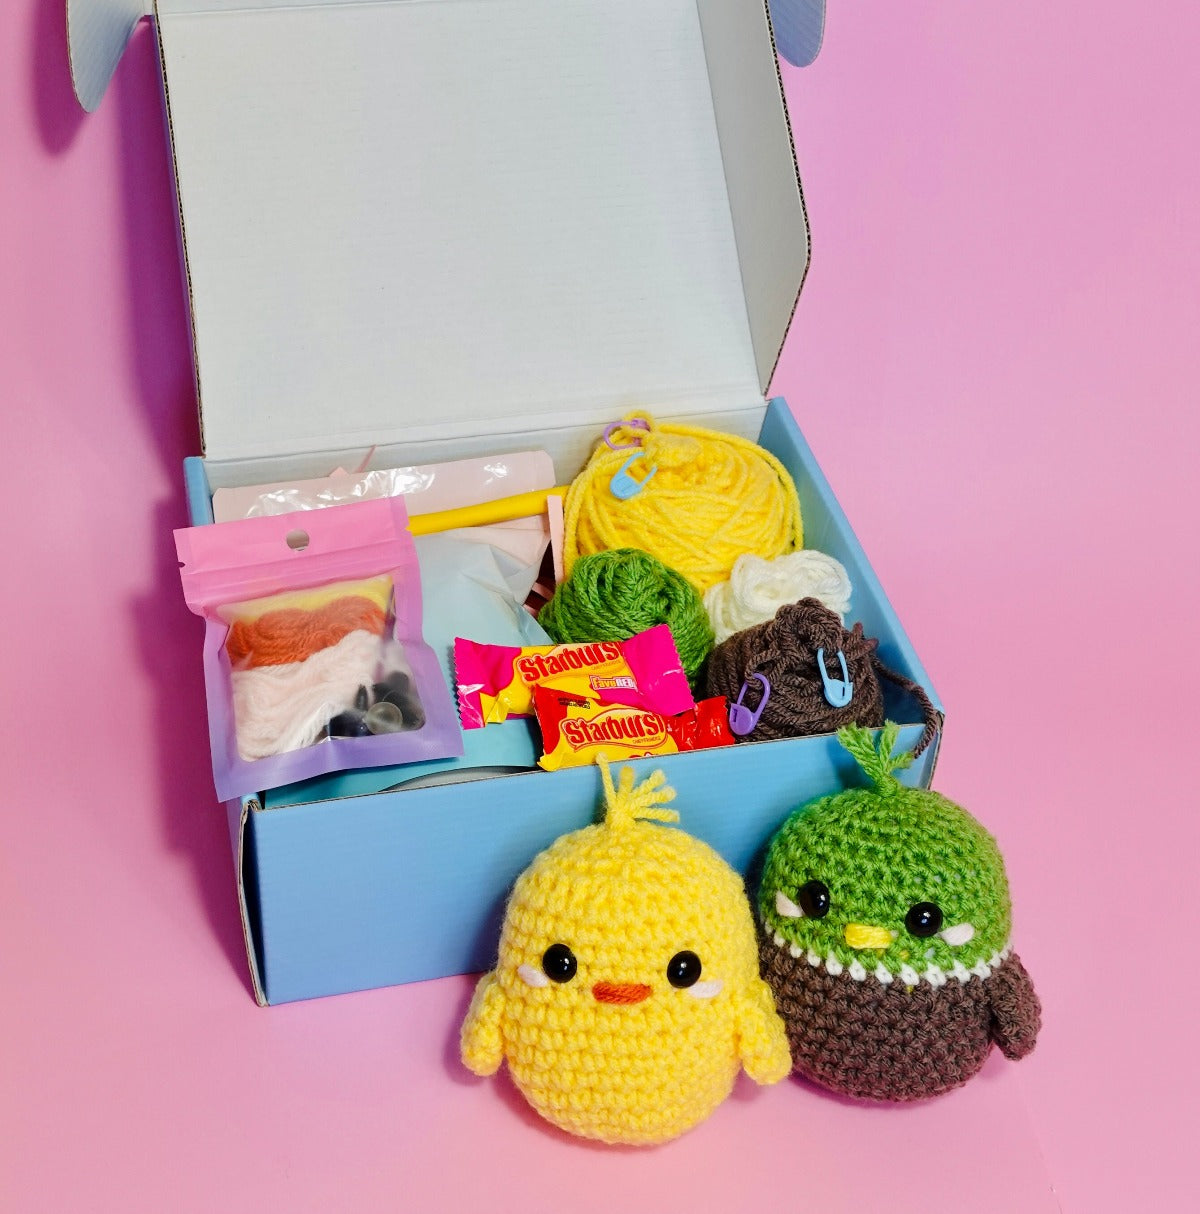 Complete Crochet Kit for Beginners: Starter Crochet Kit, All Need in